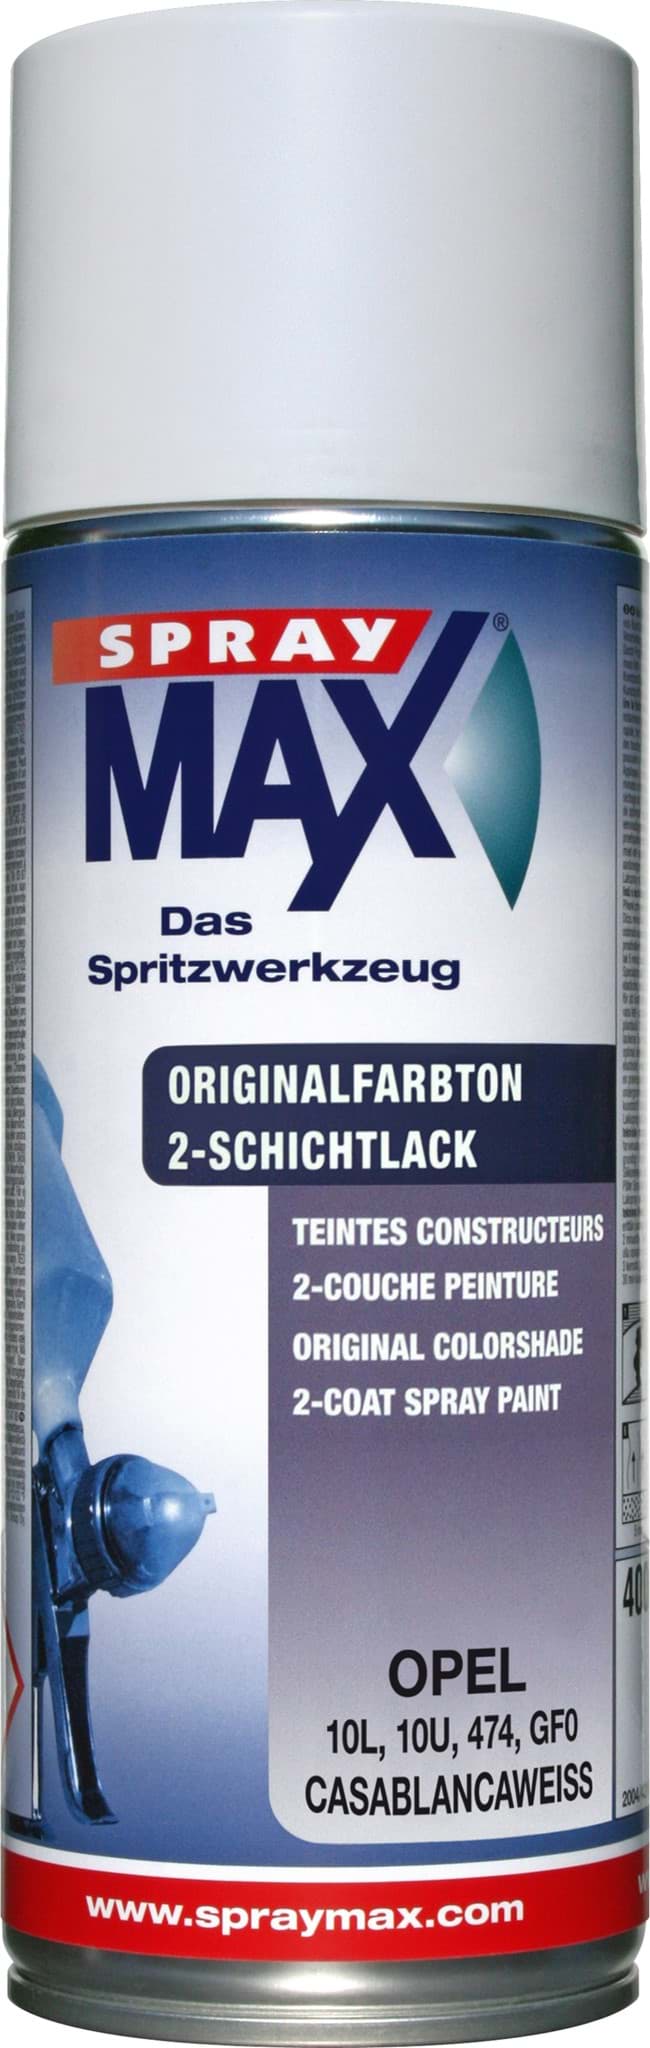 Picture of SprayMax Originalfarbton für Opel 474 casablancaweiss